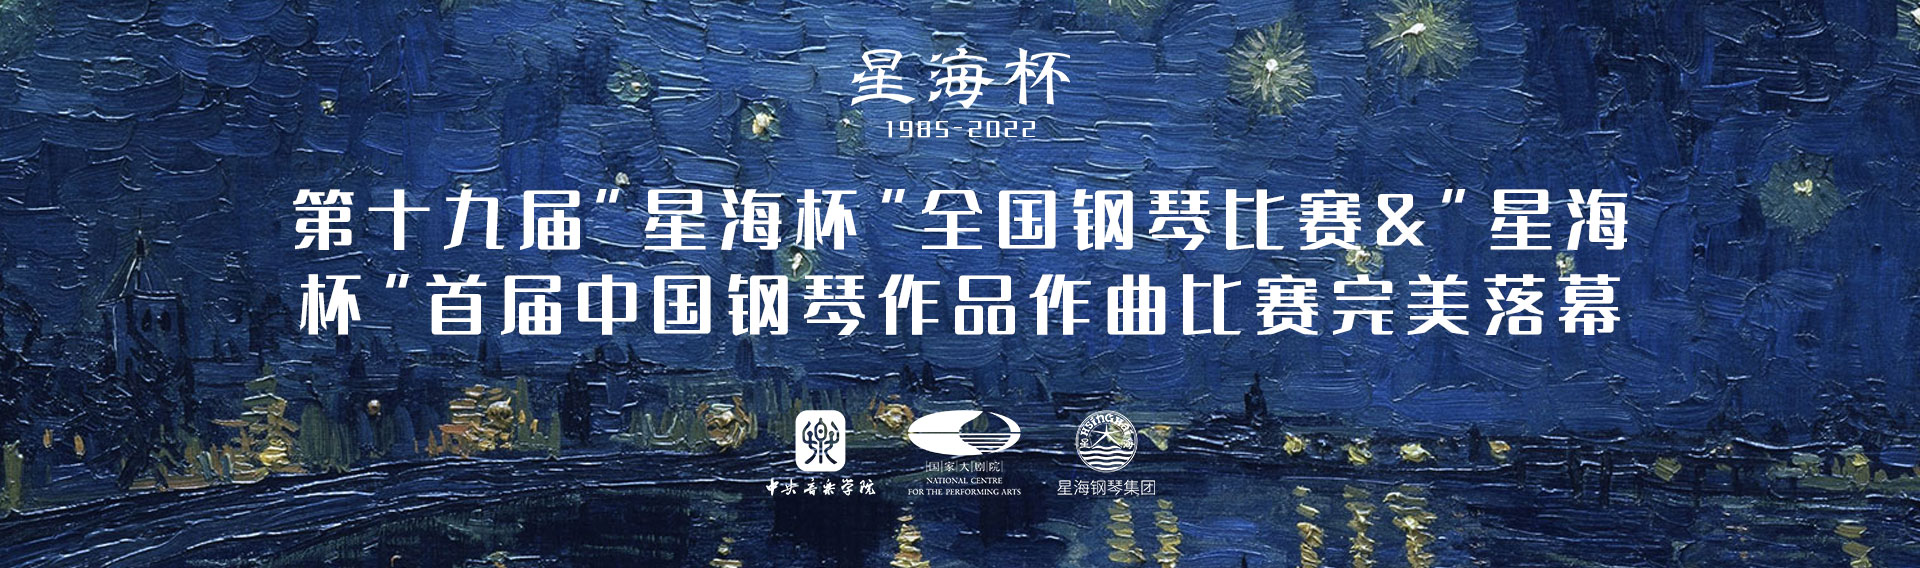 第十九届“星海杯”全国钢琴比赛&“星海杯”首届中国钢琴作品作曲比赛完美落幕